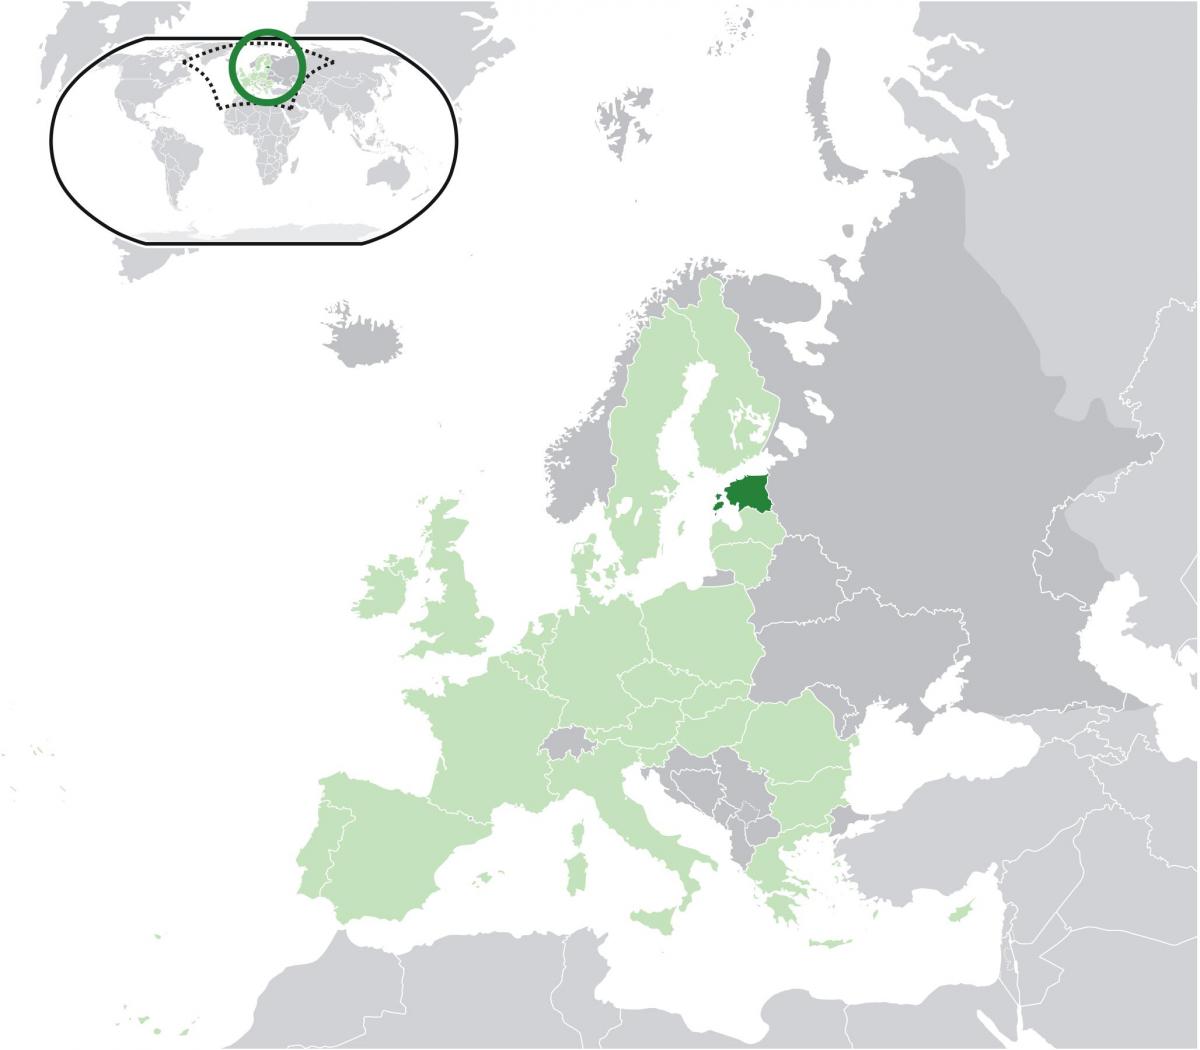 Estonia pe harta europei